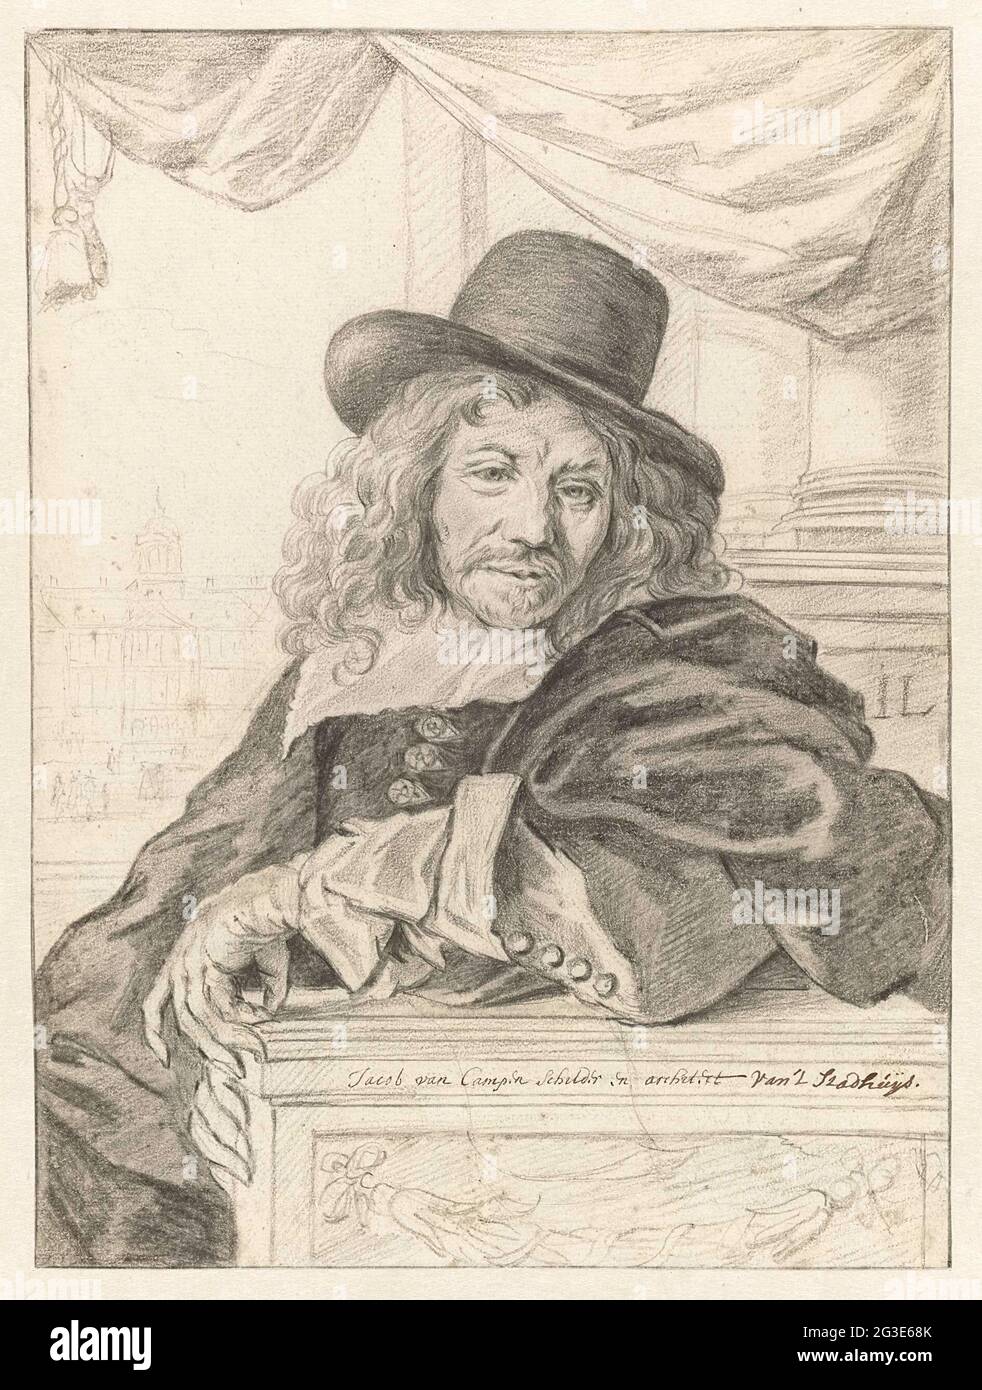 Portrait of Jacob van Campen. . Stock Photo